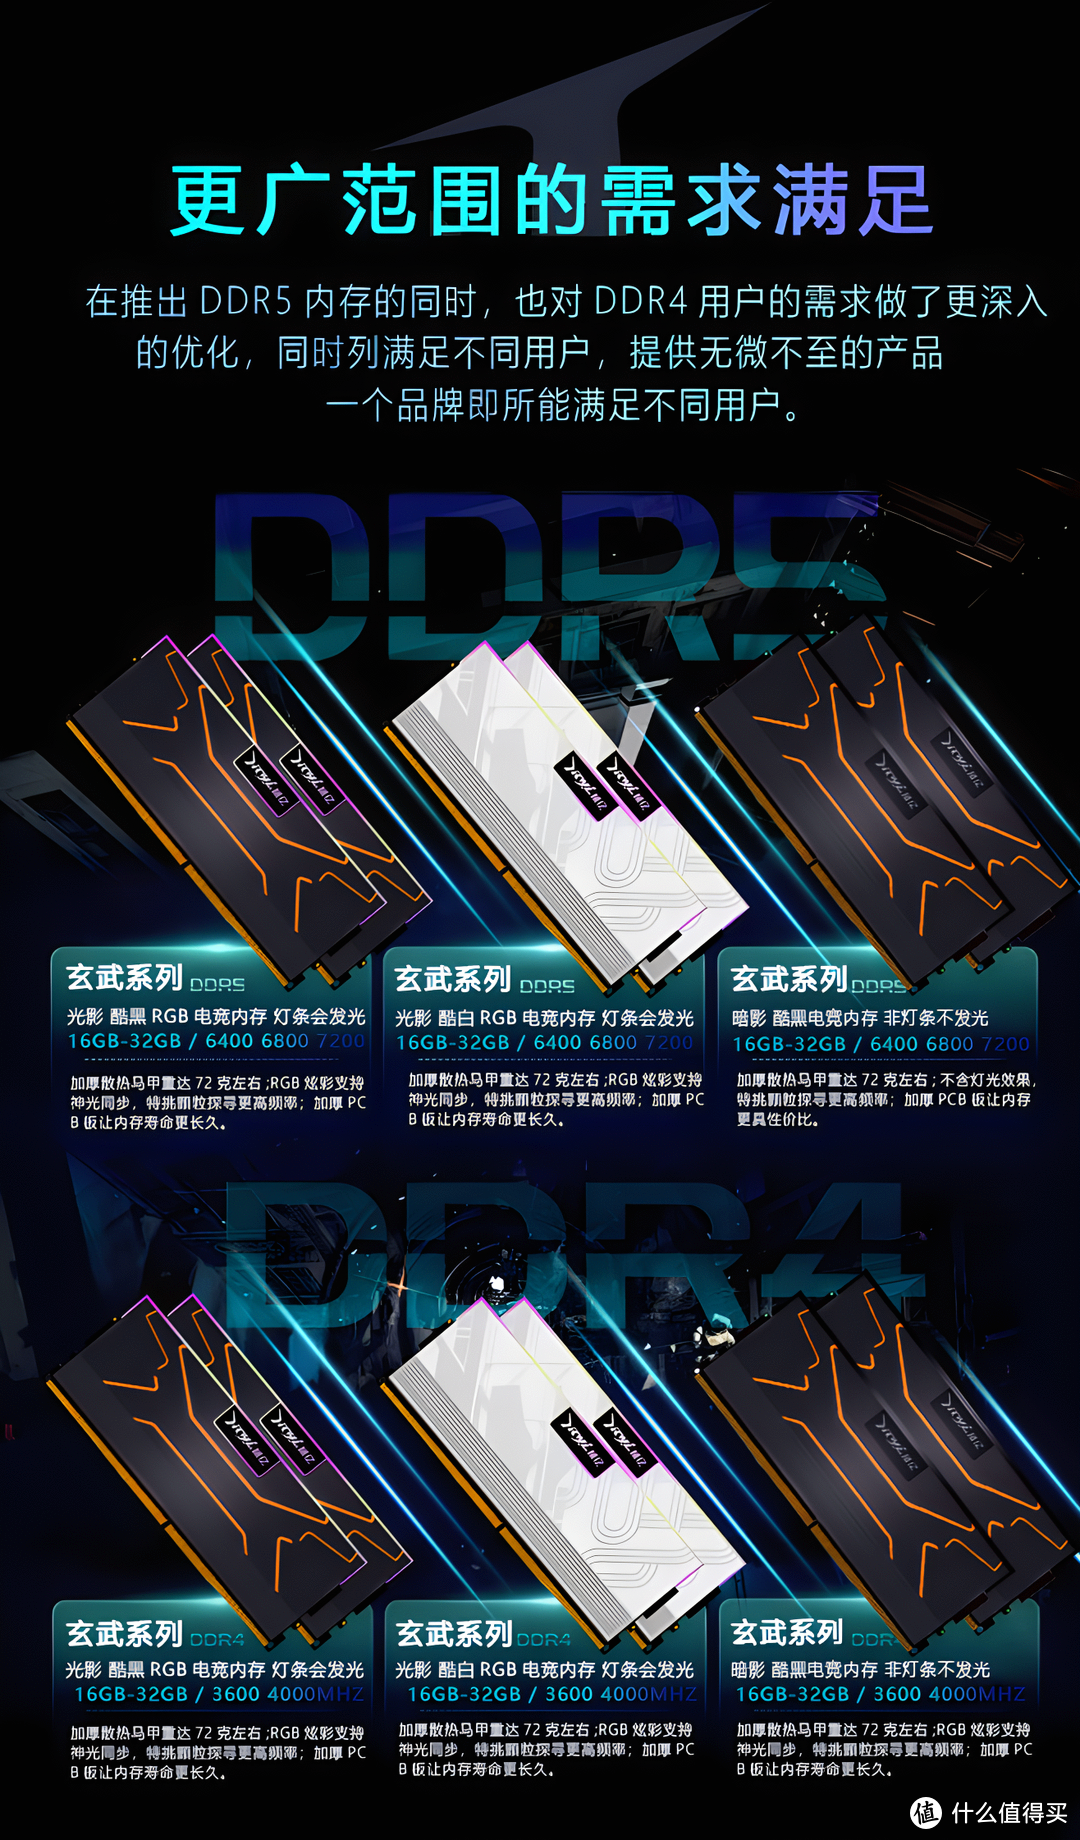 精亿玄武系列DDR4 DDR5产品型号频率图